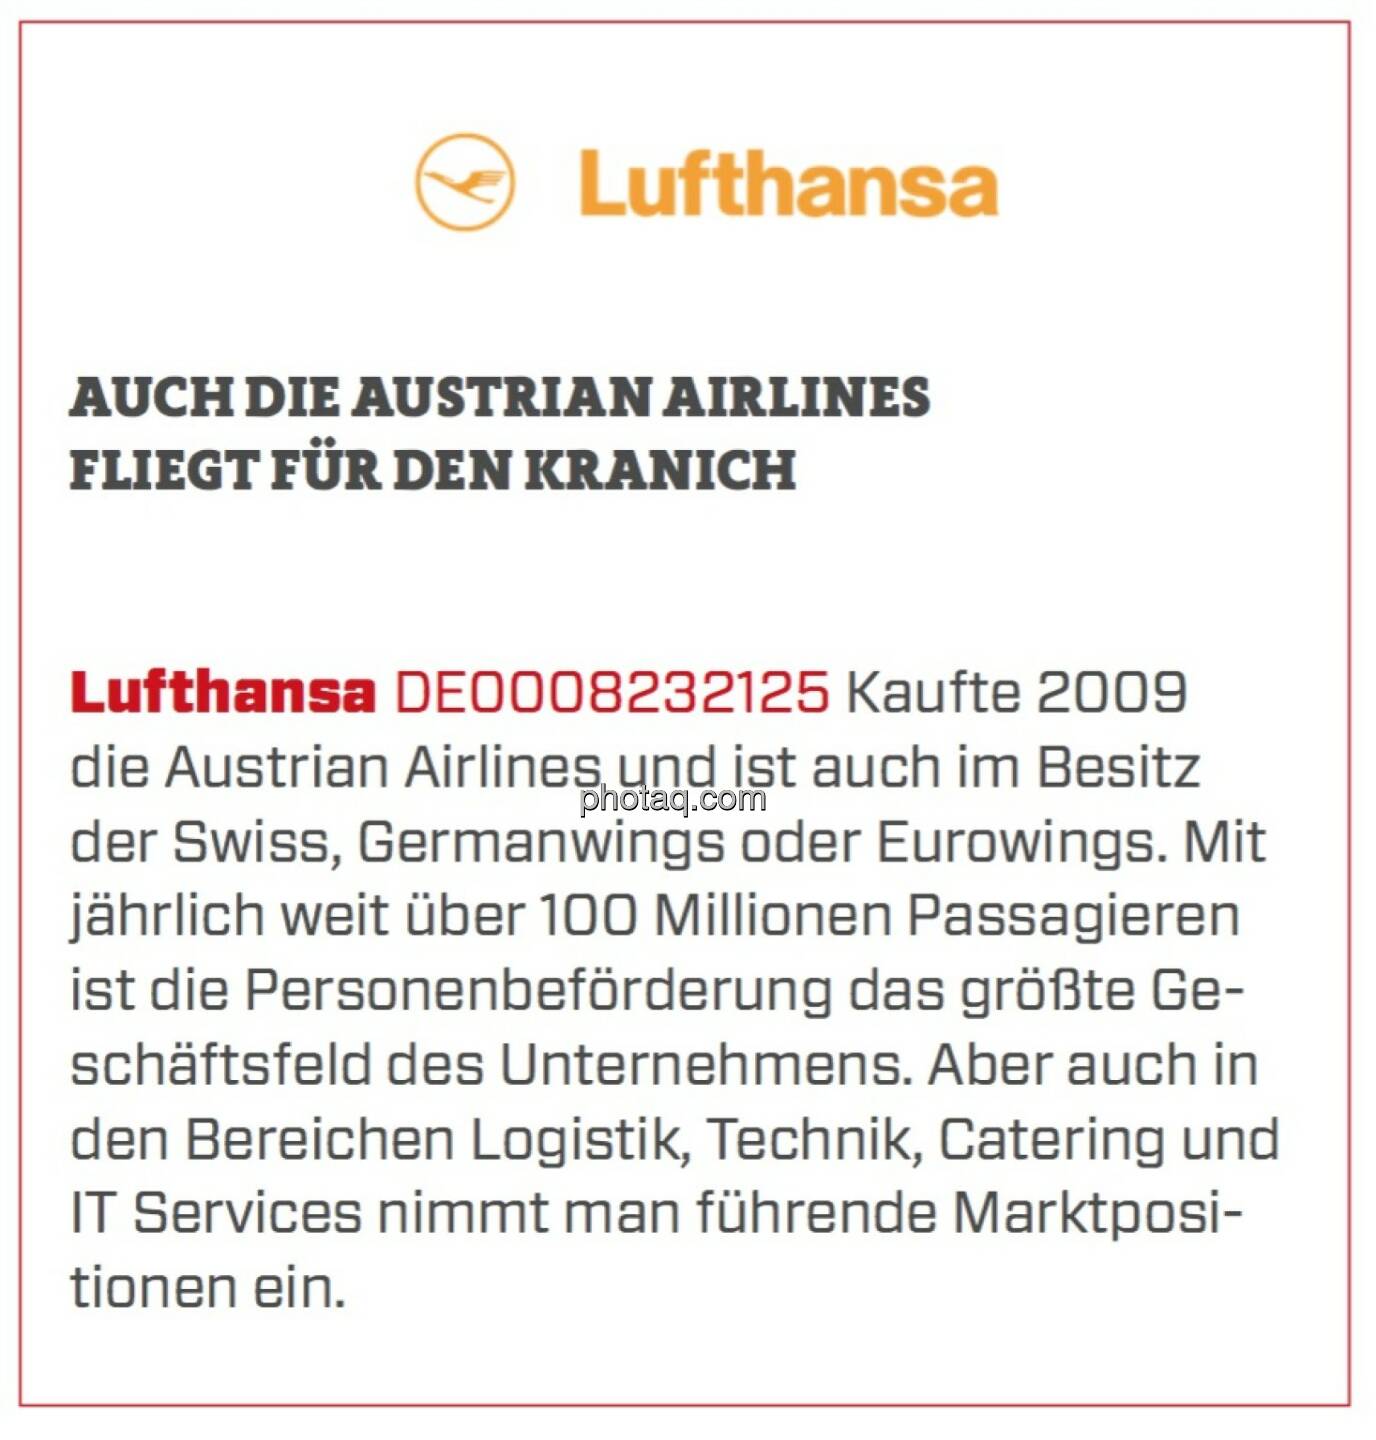 Lufthansa - Auch die Austrian Airlines fliegt für den Kranich: Kaufte 2009 die Austrian Airlines und ist auch im Besitz der Swiss, Germanwings oder Eurowings. Mit jährlich weit über 100 Millionen Passagieren ist die Personenbeförderung das größte Geschäftsfeld des Unternehmens. Aber auch in den Bereichen Logistik, Technik, Catering und IT Services nimmt man führende Marktpositionen ein.